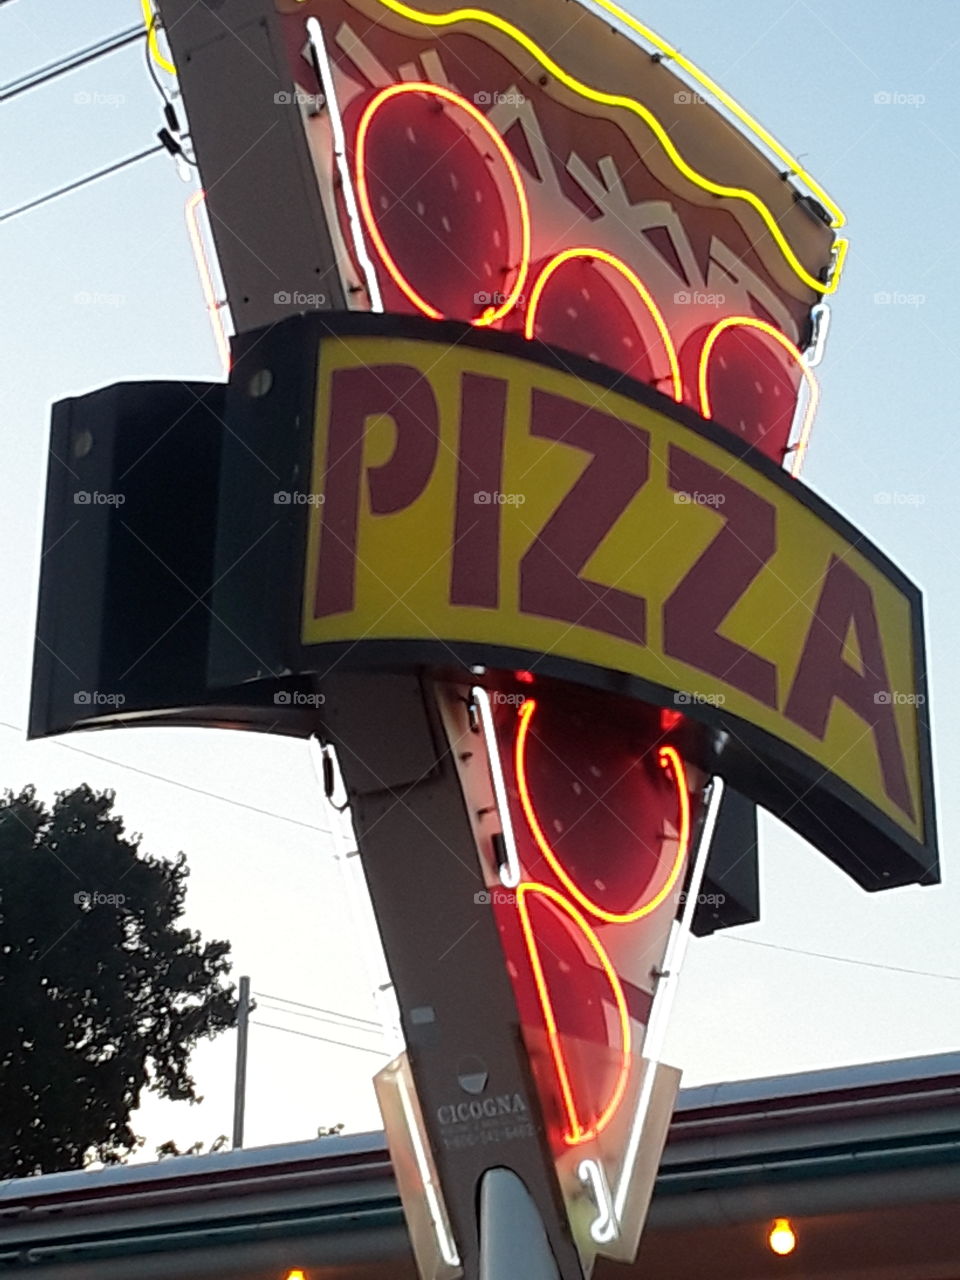 Eddie's pizza sign